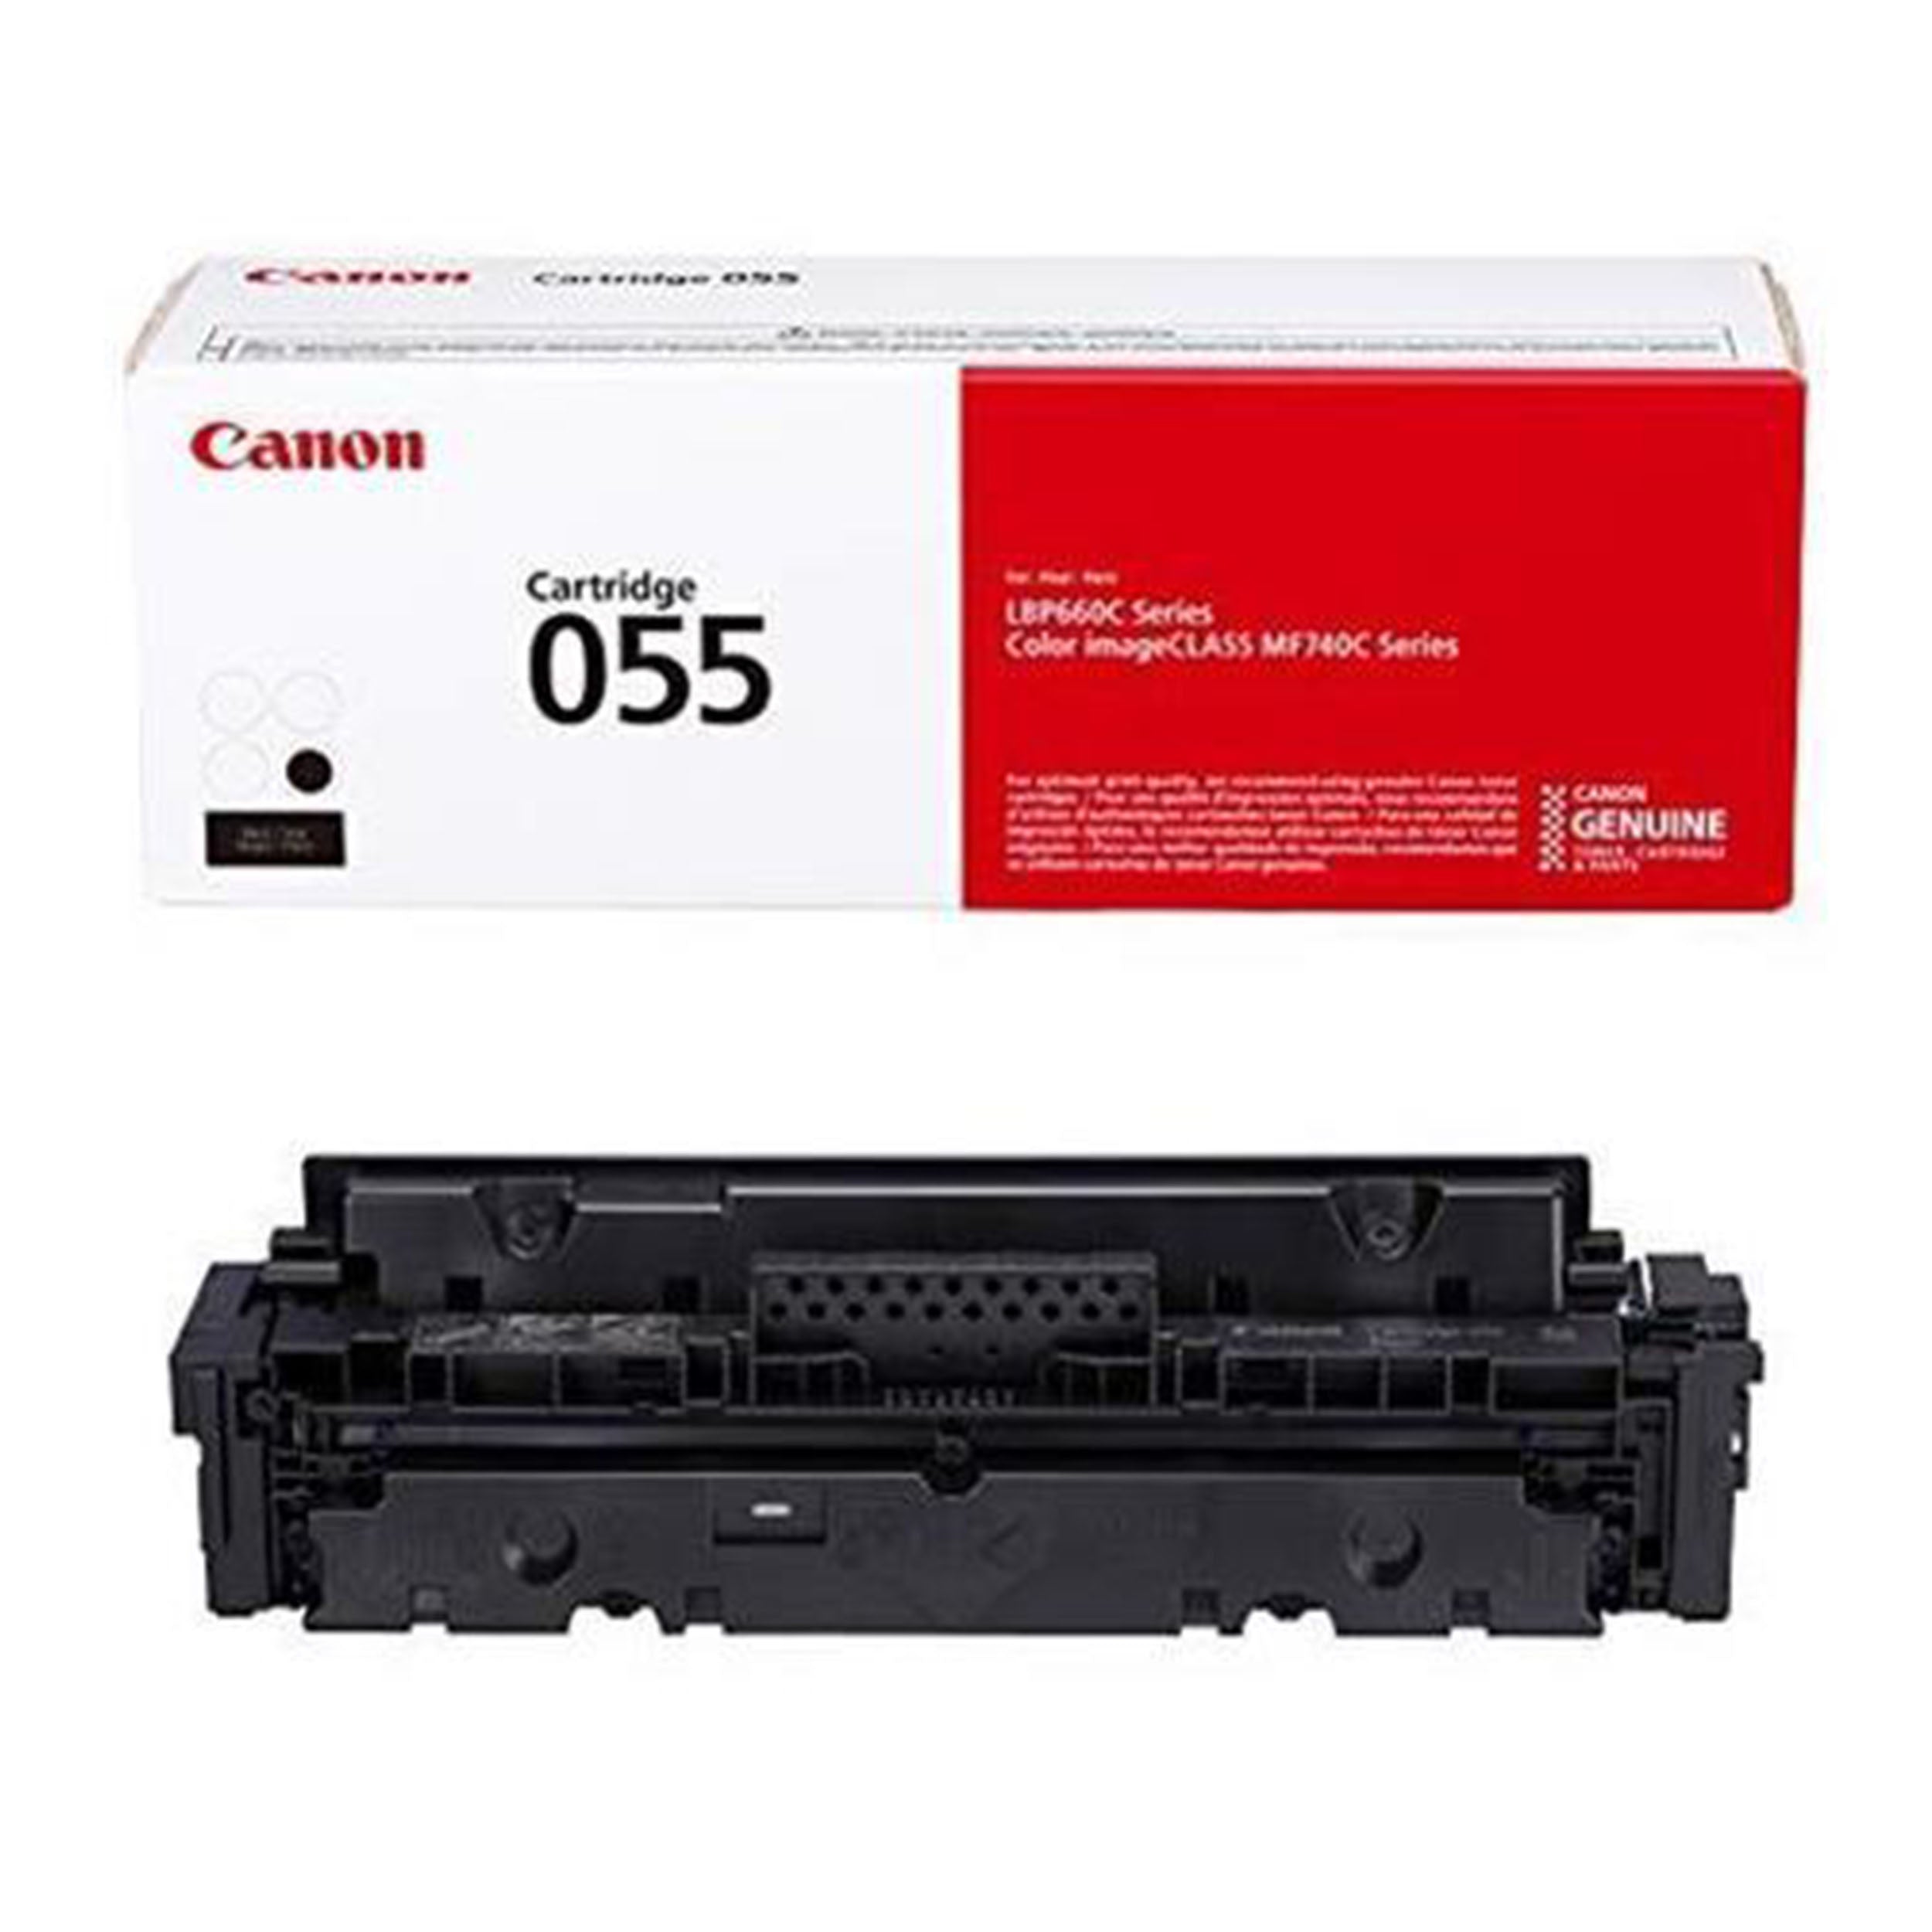 Absolute Toner Canon 055 Black Cartridge Original Genuine OEM | 3016C001 Canon Toner Cartridges